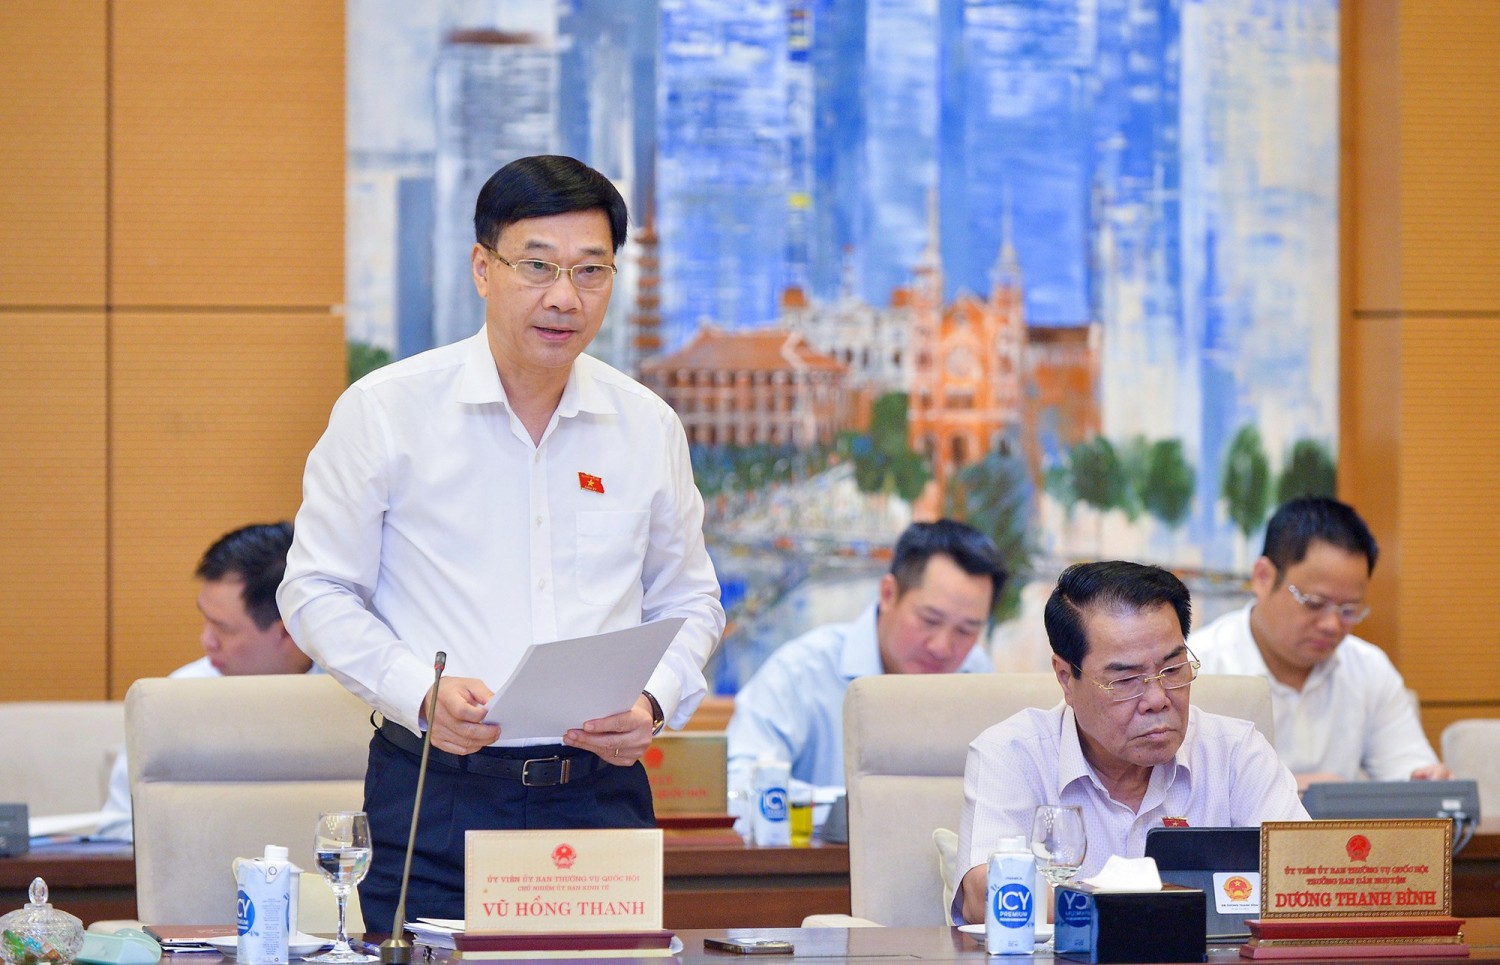 Quốc hội đề nghị Chính phủ khẩn trương trình Chương trình MTQG về chấn hưng và phát triển văn hóa, xây dựng con người Việt Nam